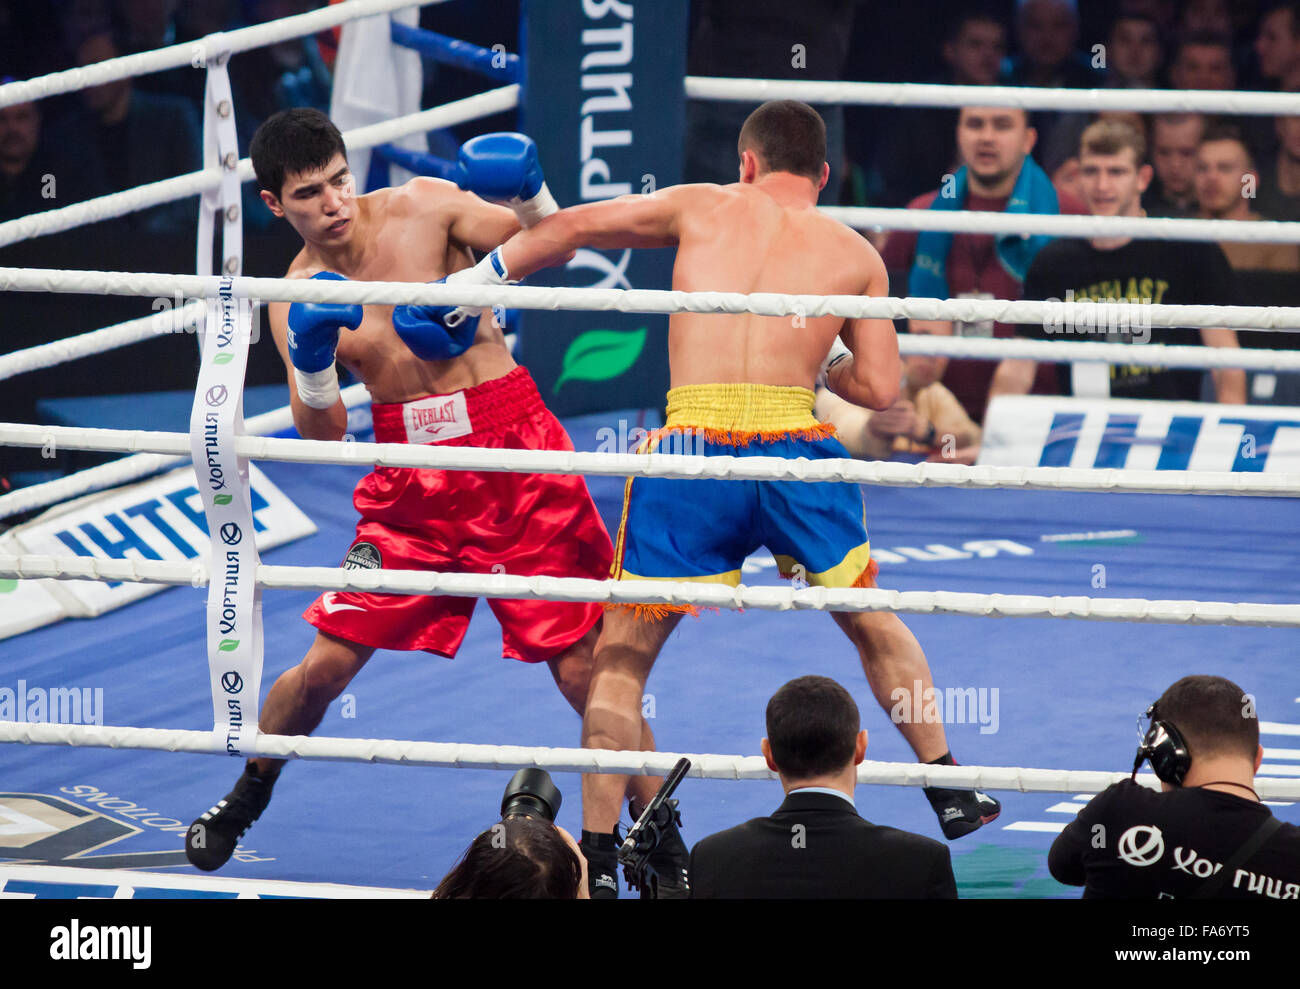 Kiev, UKRAINE - le 13 décembre 2014 : Eldos Sarkulov du Kazakhstan (en rouge) se bat avec Mikhail Andriets de l'Ukraine au cours de Soirée 'Boxing' dans le Palais des Sports de Kiev Banque D'Images